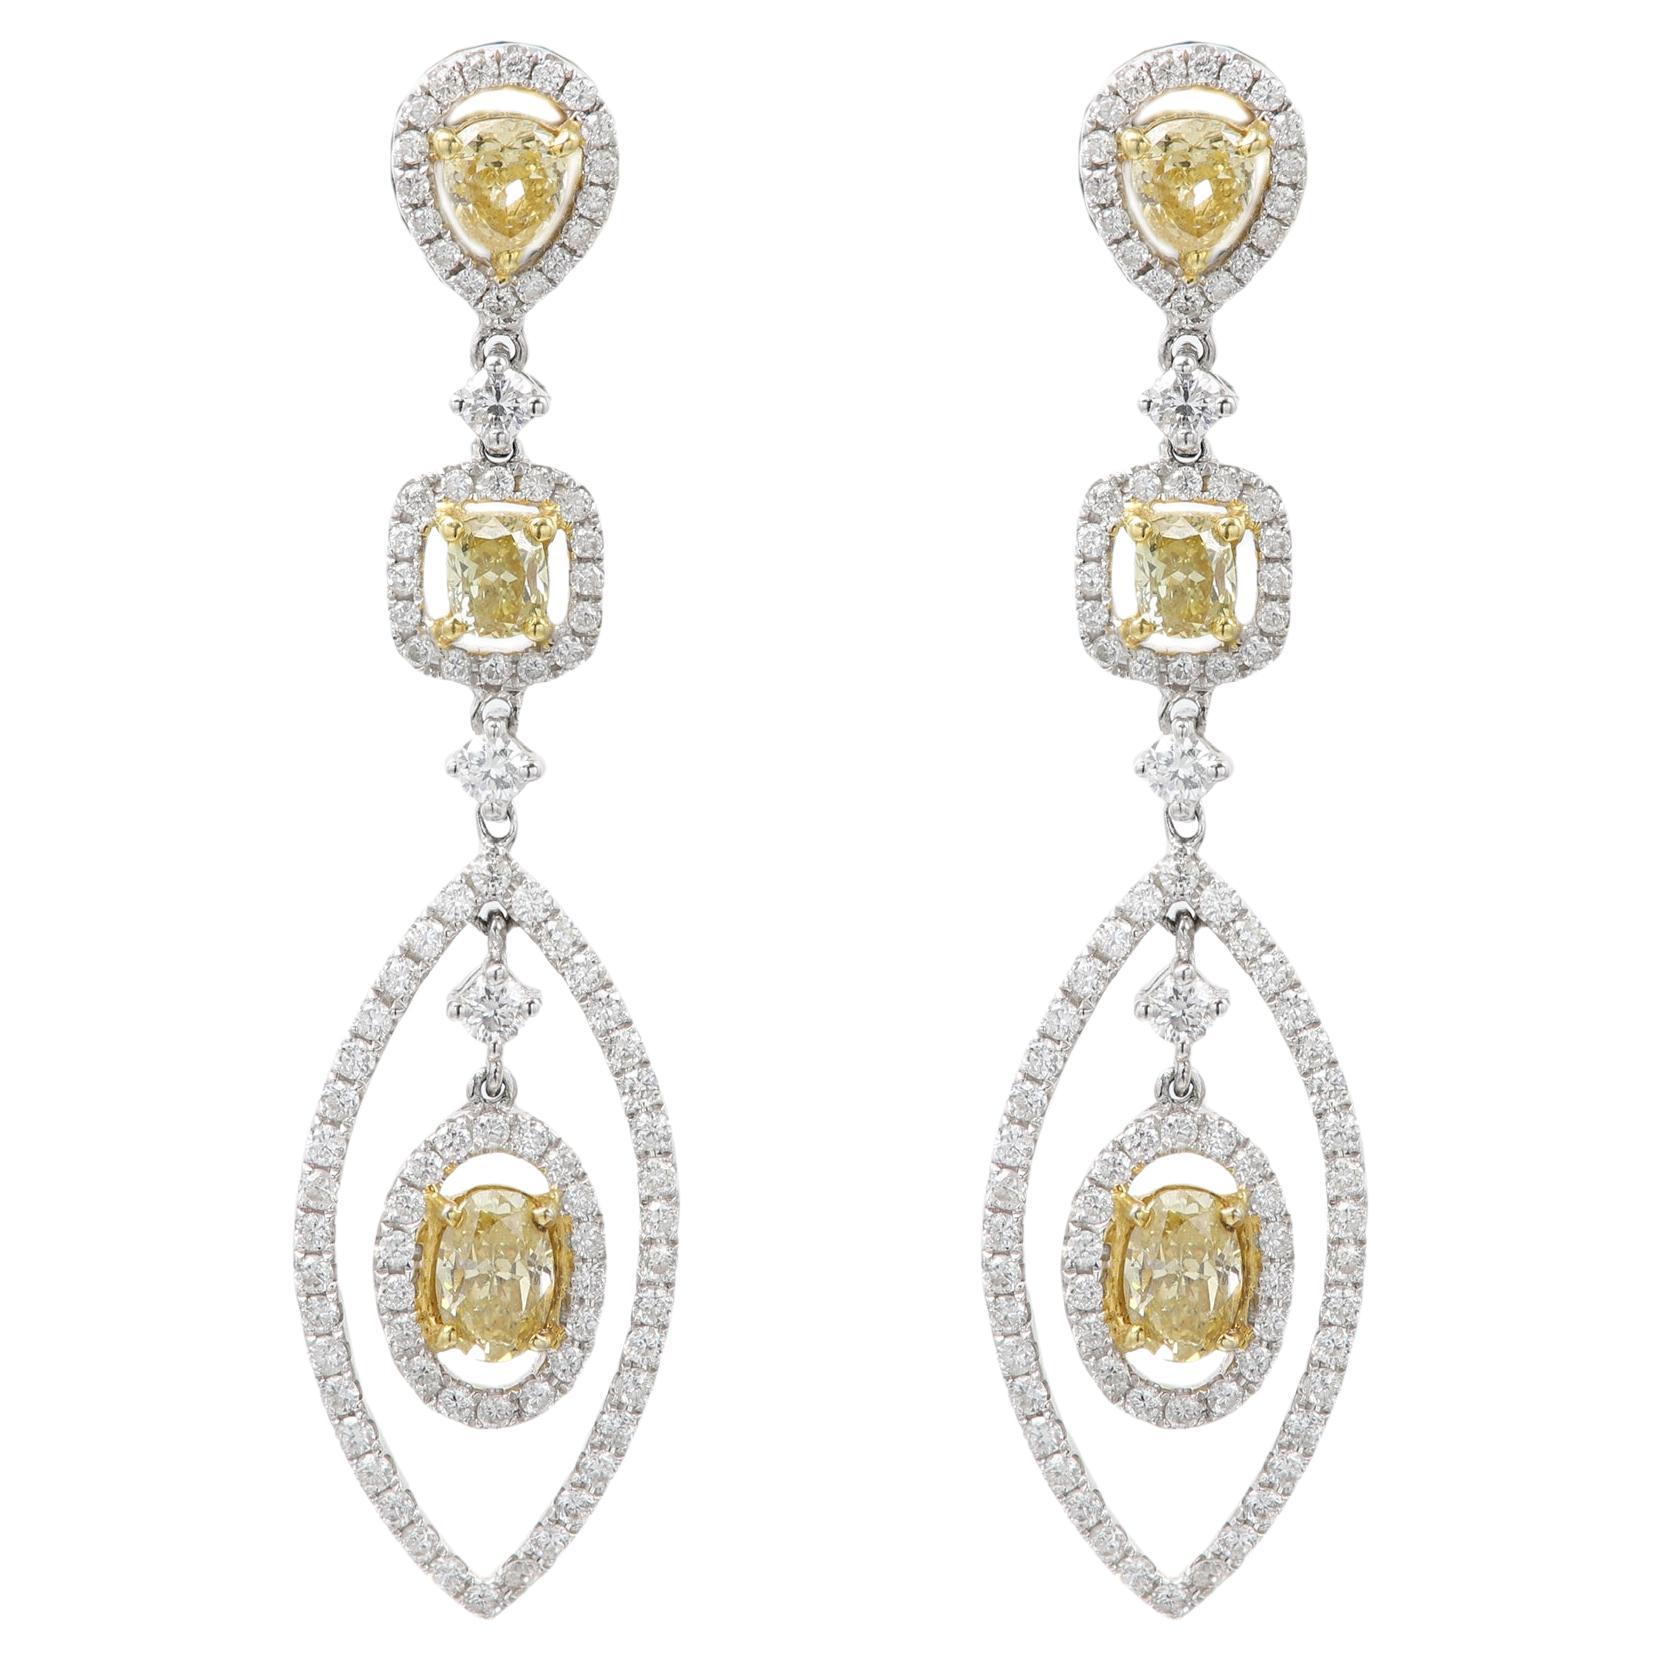 Dangle Yellow Diamond Earrings 18 Karat White Gold Chandelier Earrings